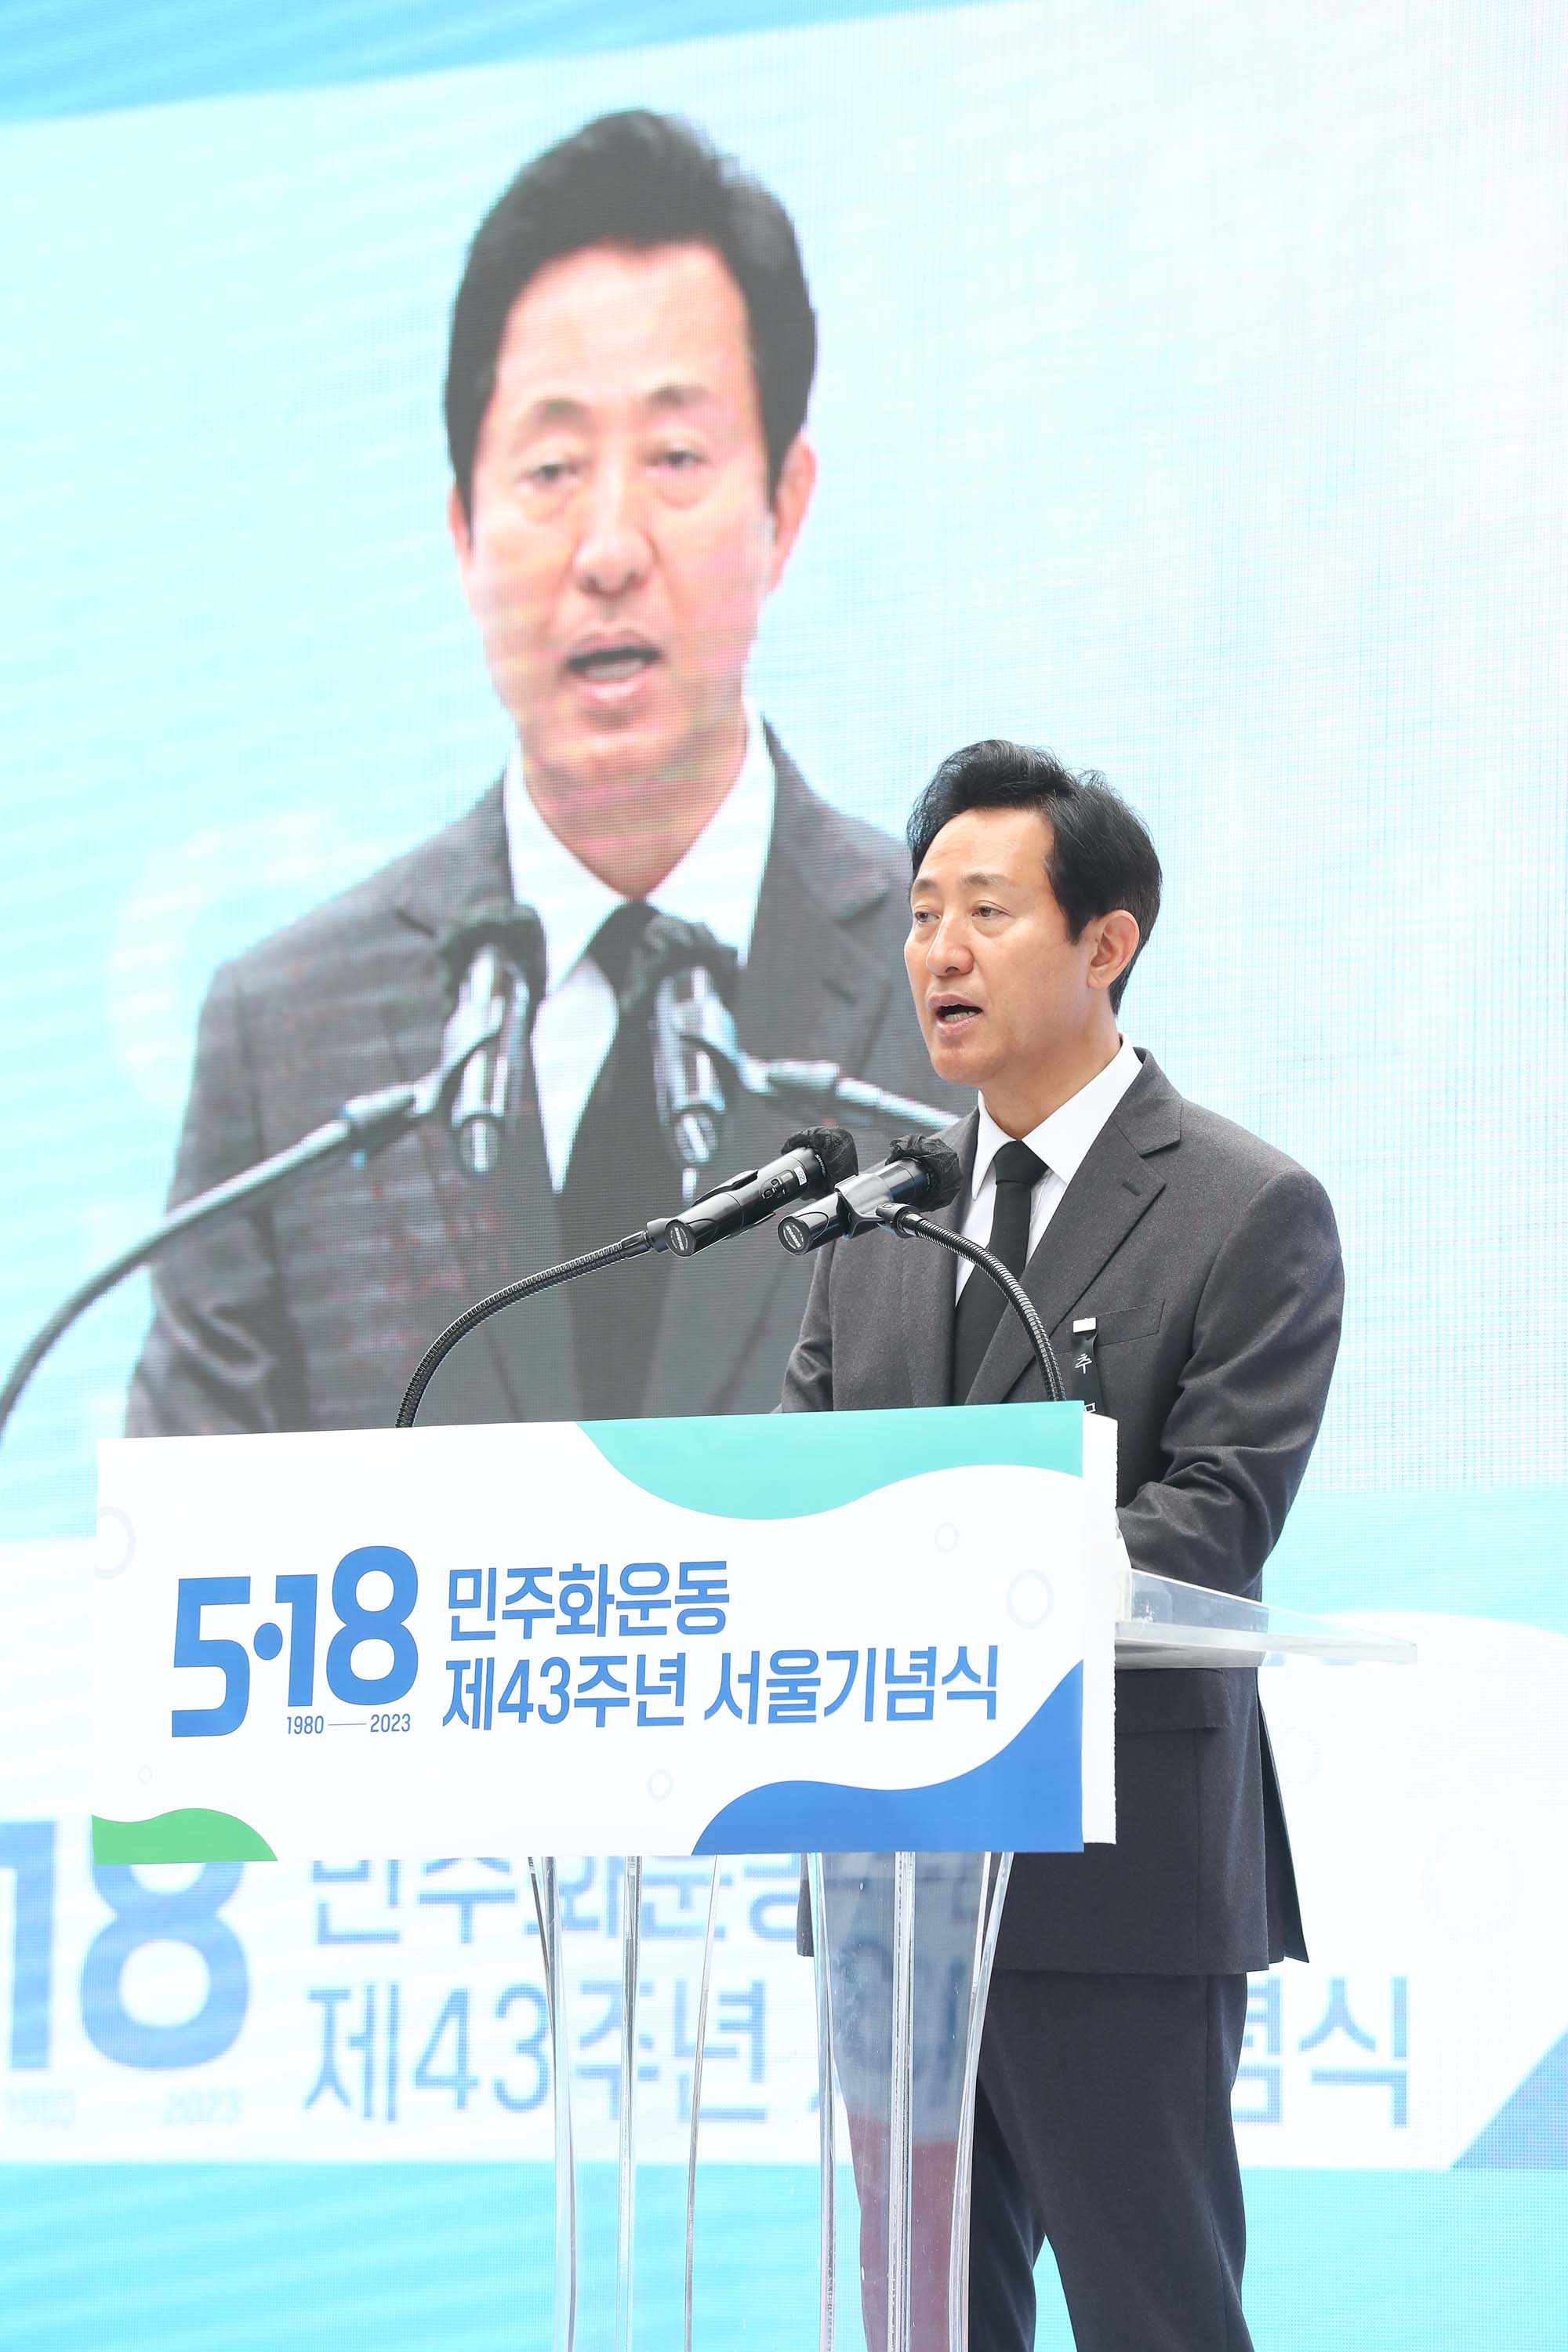 518 민주화운동 서울기념식